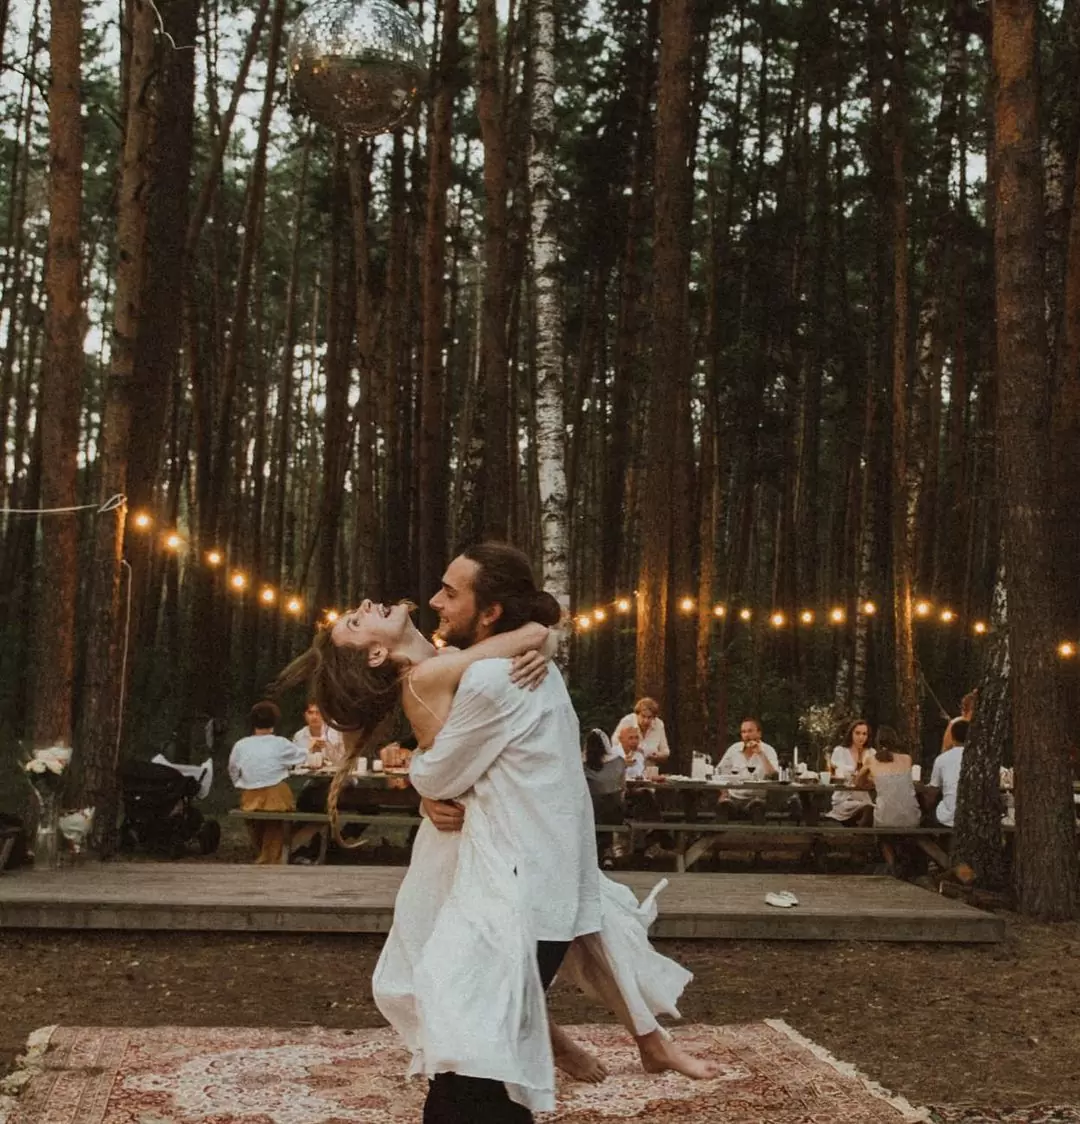 Жених и Невеста довольные, свободные и счастливые в лесу глэмпинга на фоне ковров и гирлянд